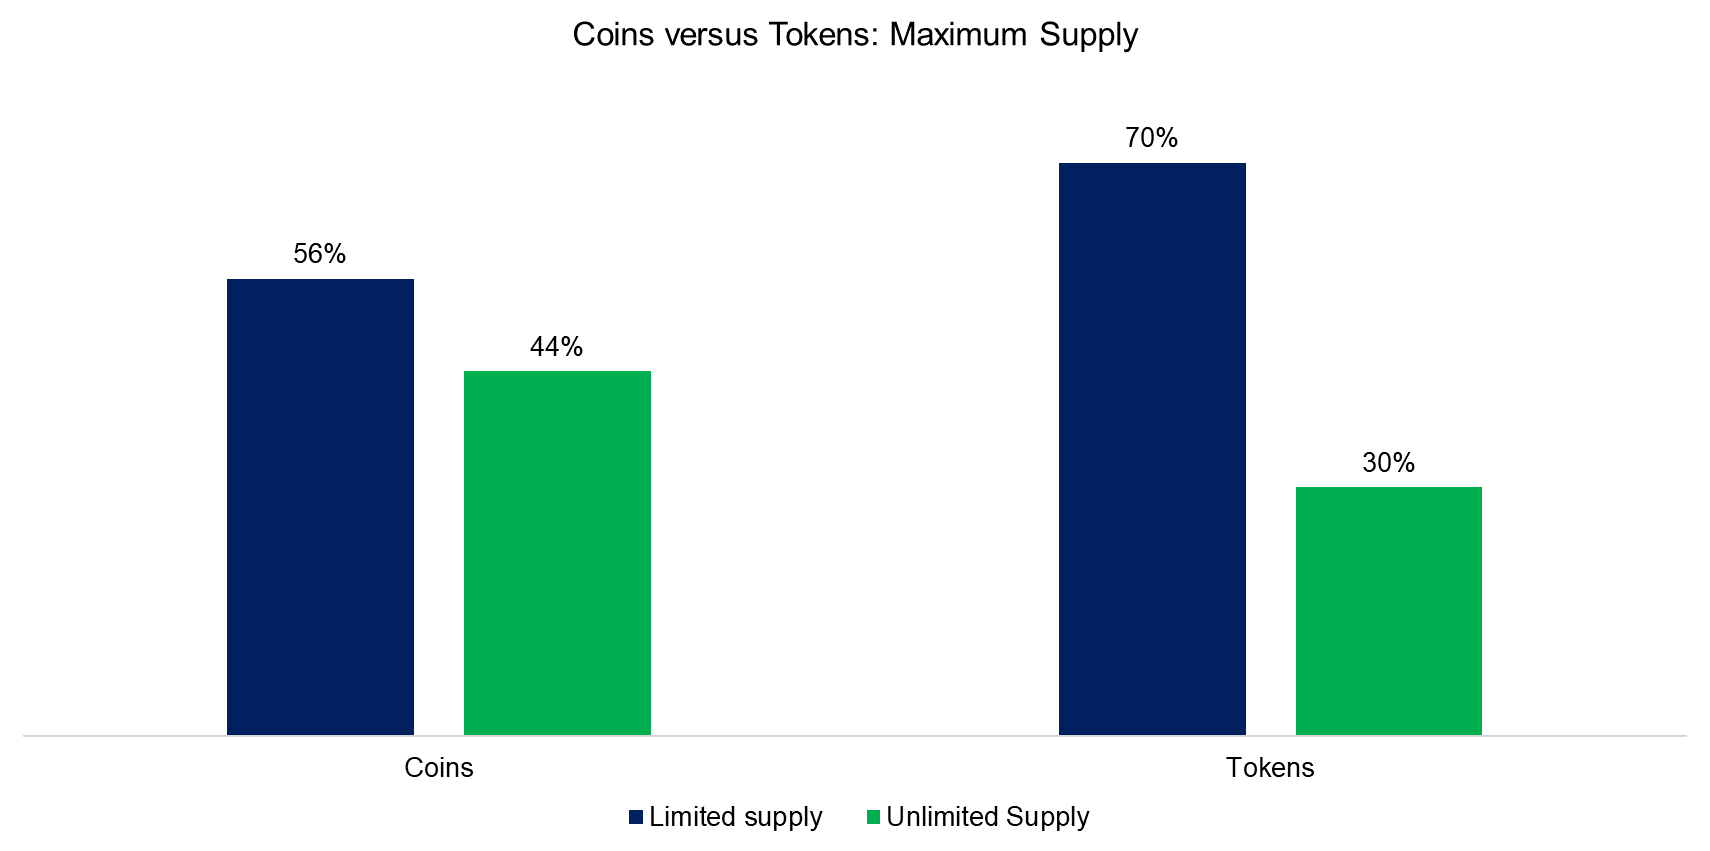 Coins versus Tokens: Maximum Supply